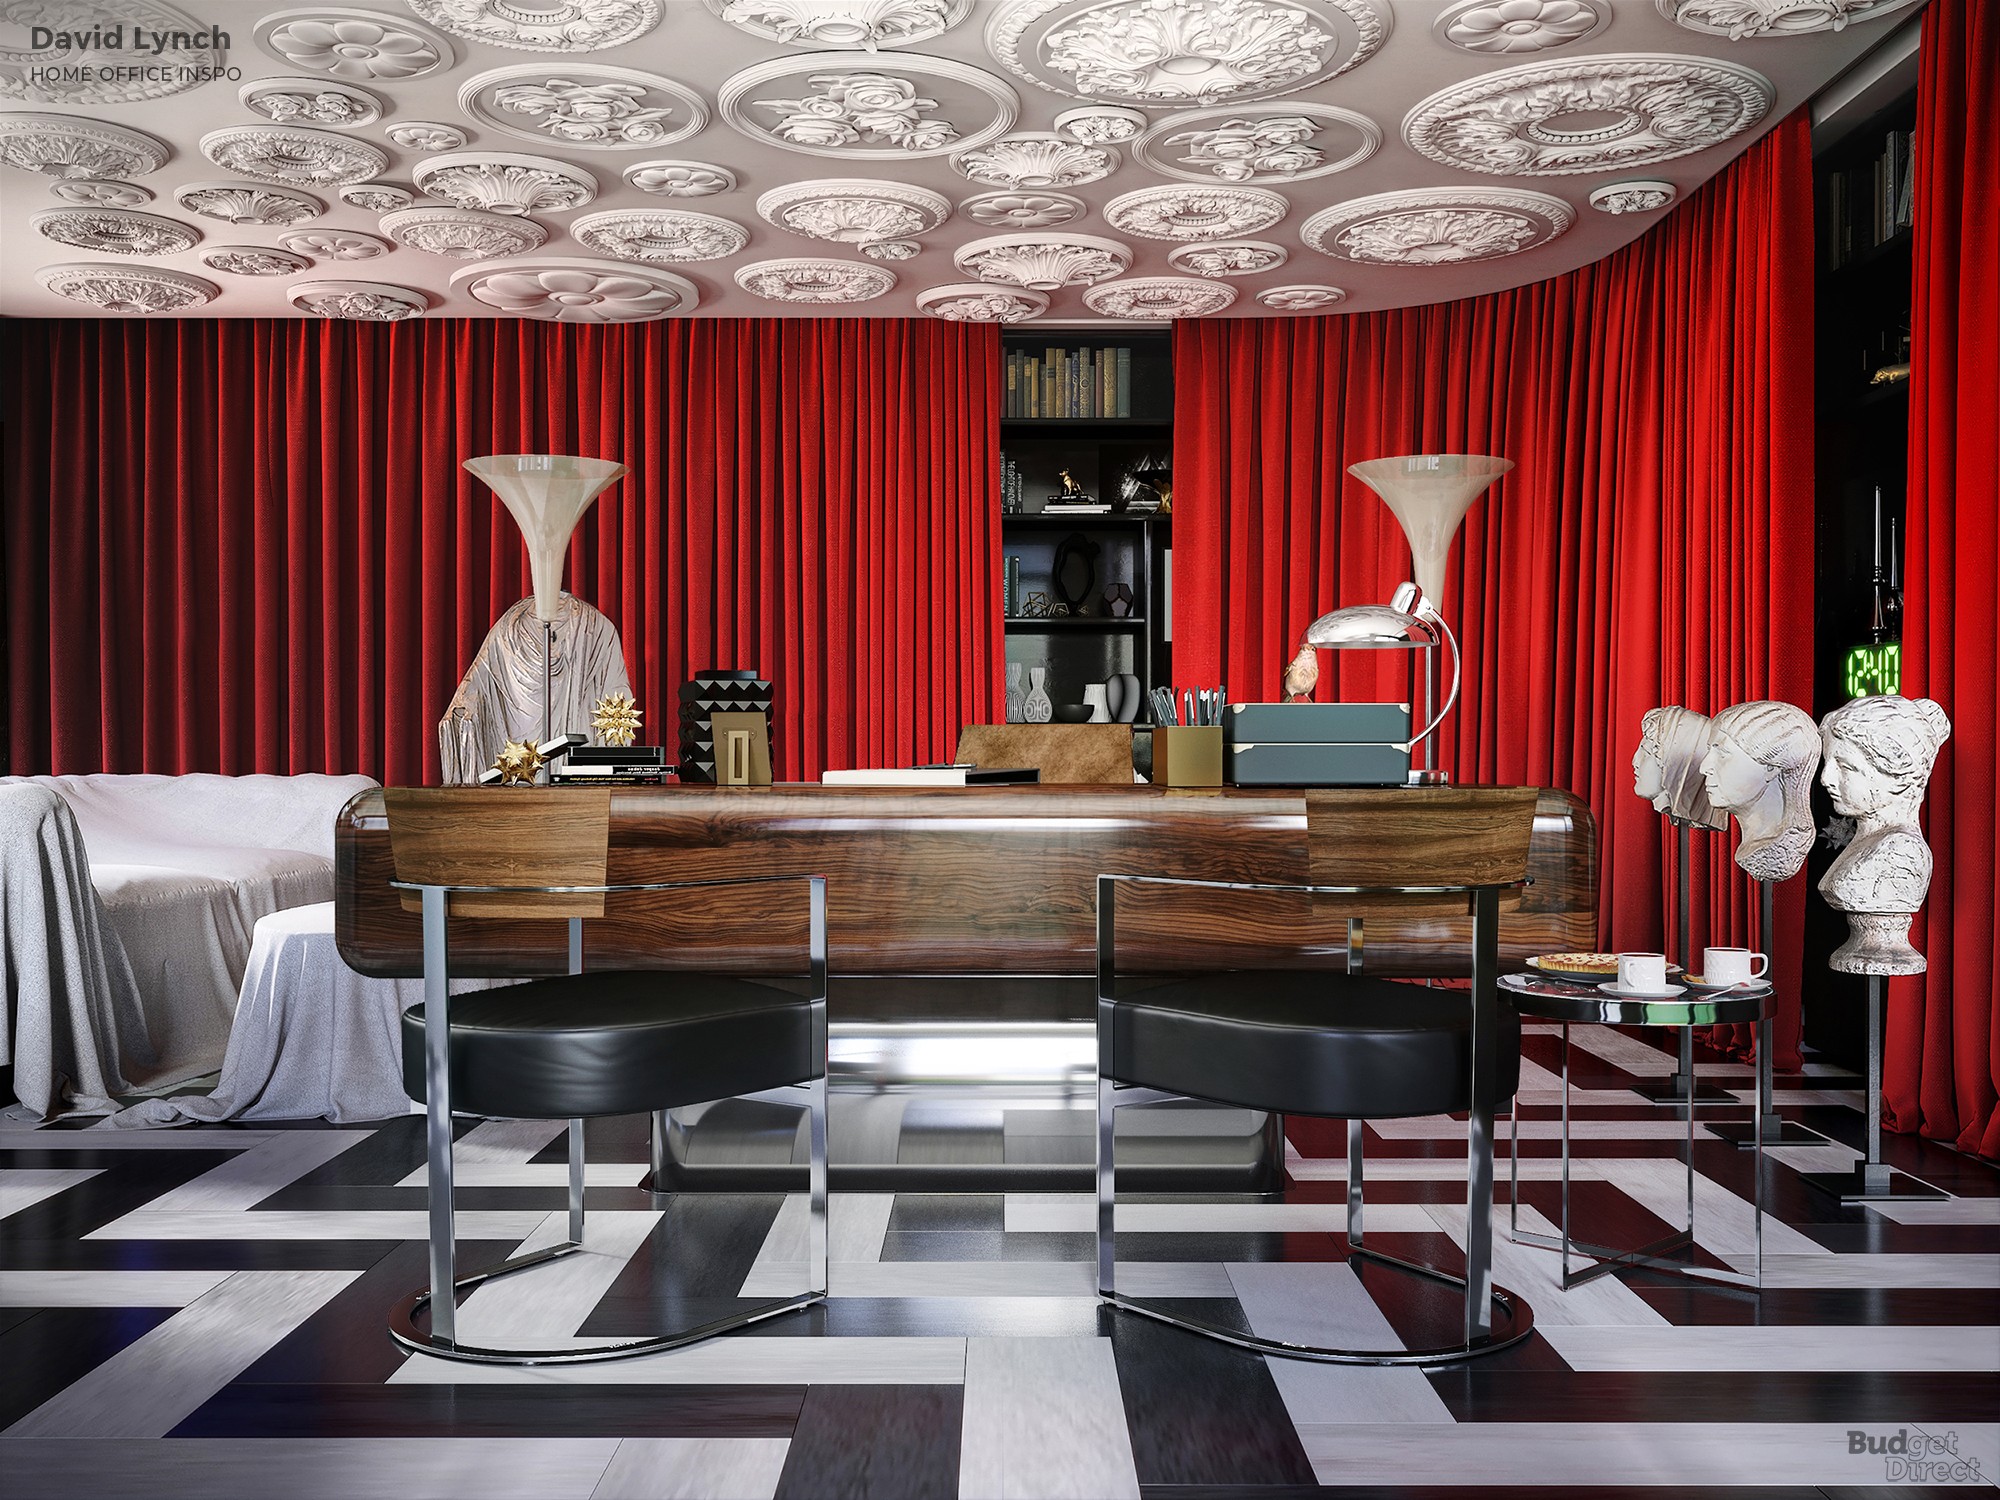  O home office inspirado em David Lynch mistura a sala vermelha Twin Peaks com um pouco de 